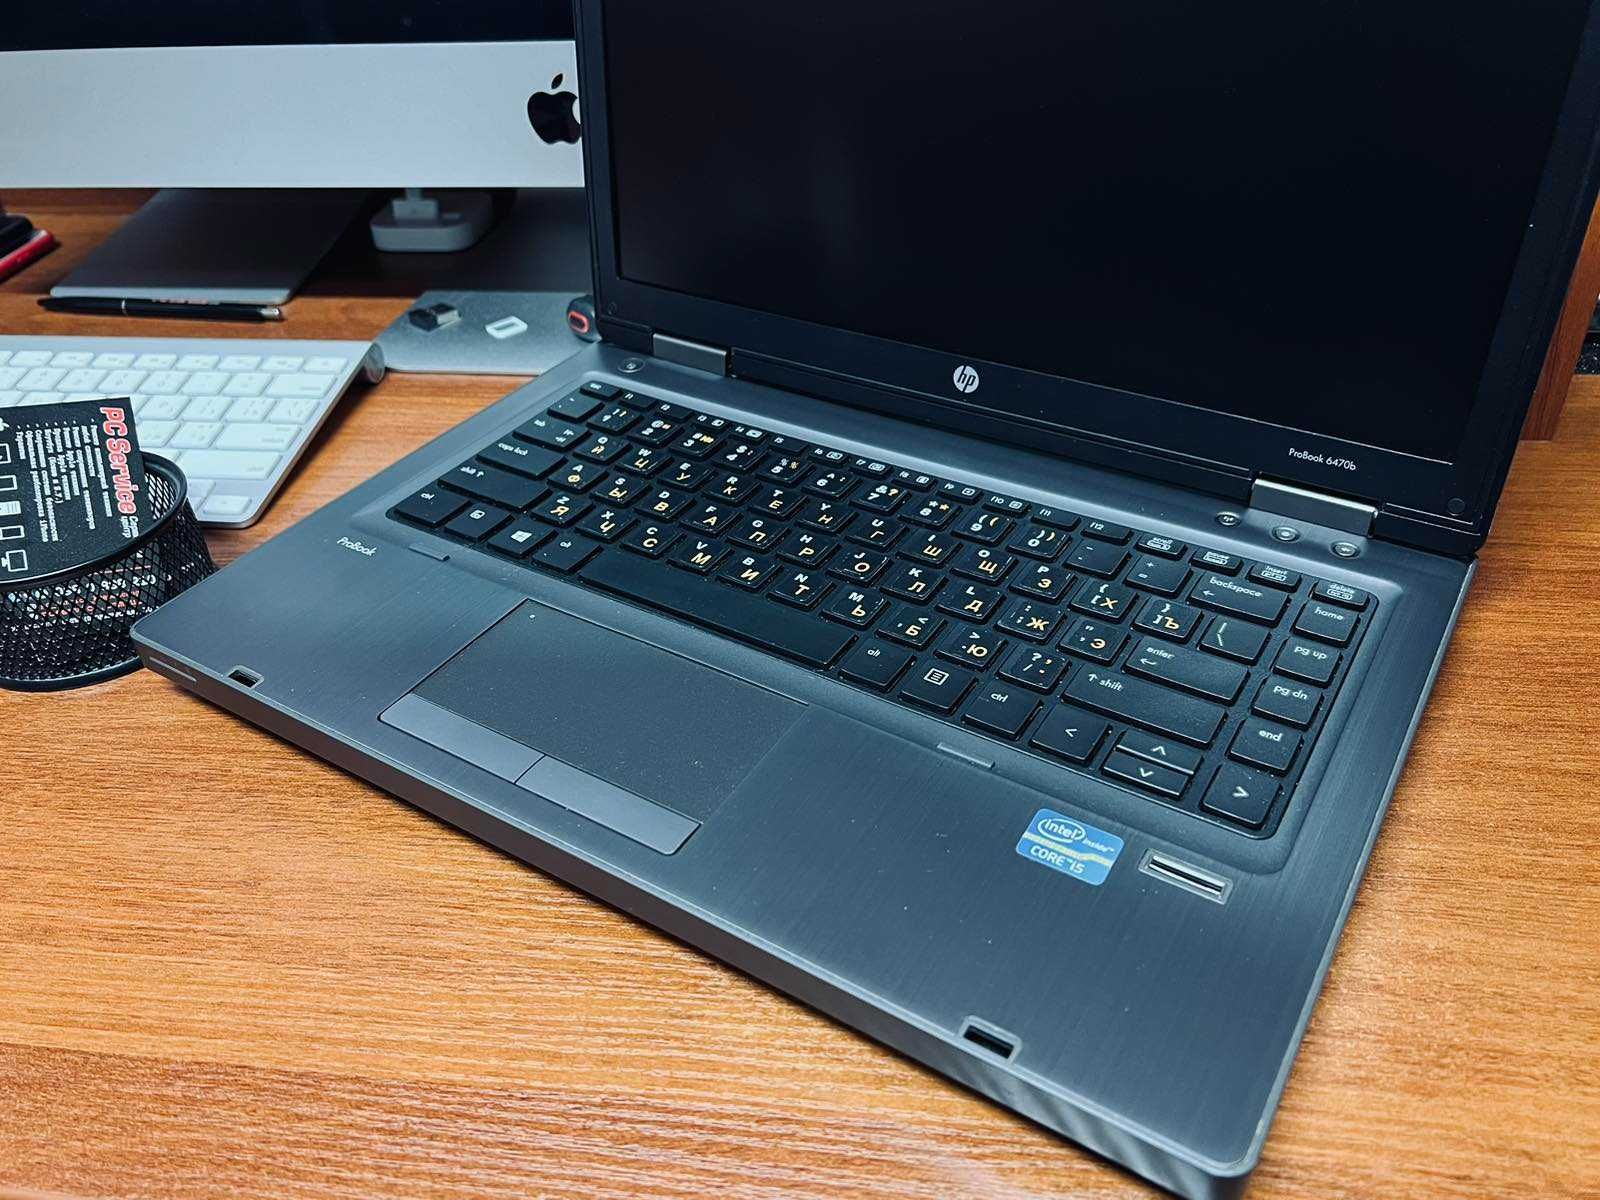 Ноутбук HP Бизнес серии Core i5/4gb/SSD120+HDD500 (PC Service)